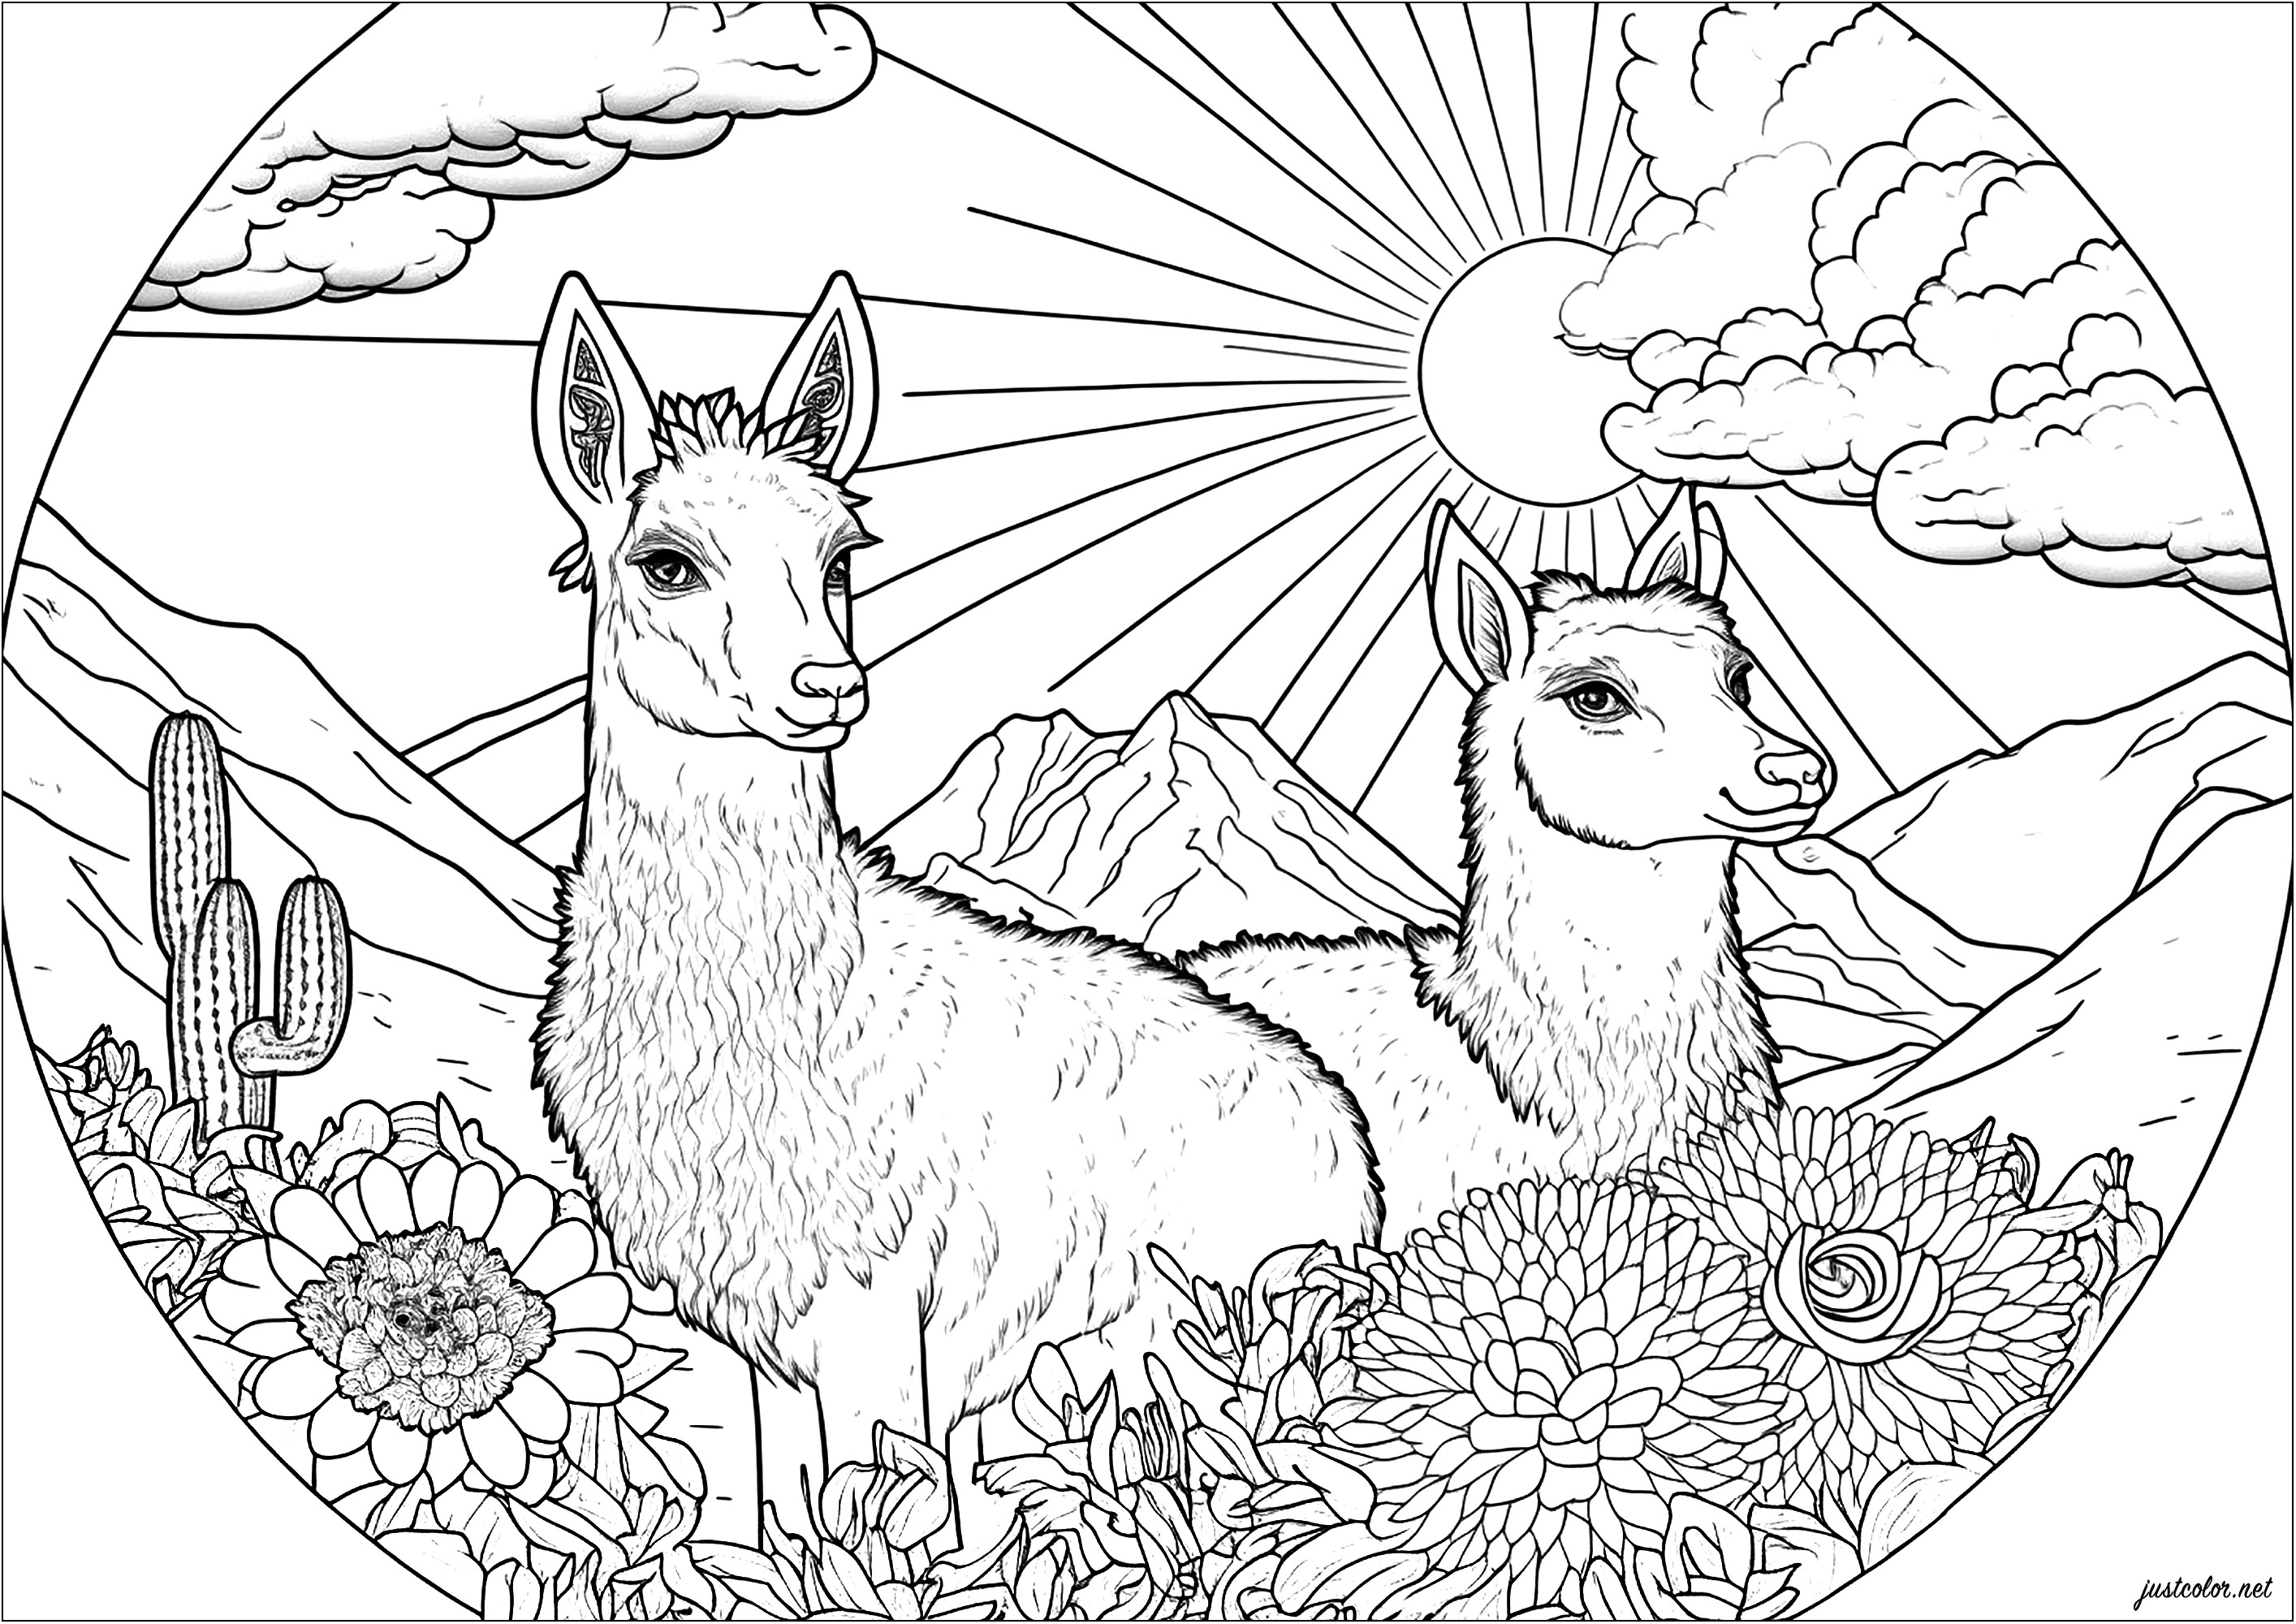 Deux lamas sur un terrain luxuriant, en train de profiter de la chaleur du soleil. Ce coloriage est absolument magnifique! Il représente deux lamas mignons et joyeux, entourés de fleurs multicolores et d'un soleil brillant. La composition est très harmonieuse et donne à ce coloriage une atmosphère de paix et de sérénité.